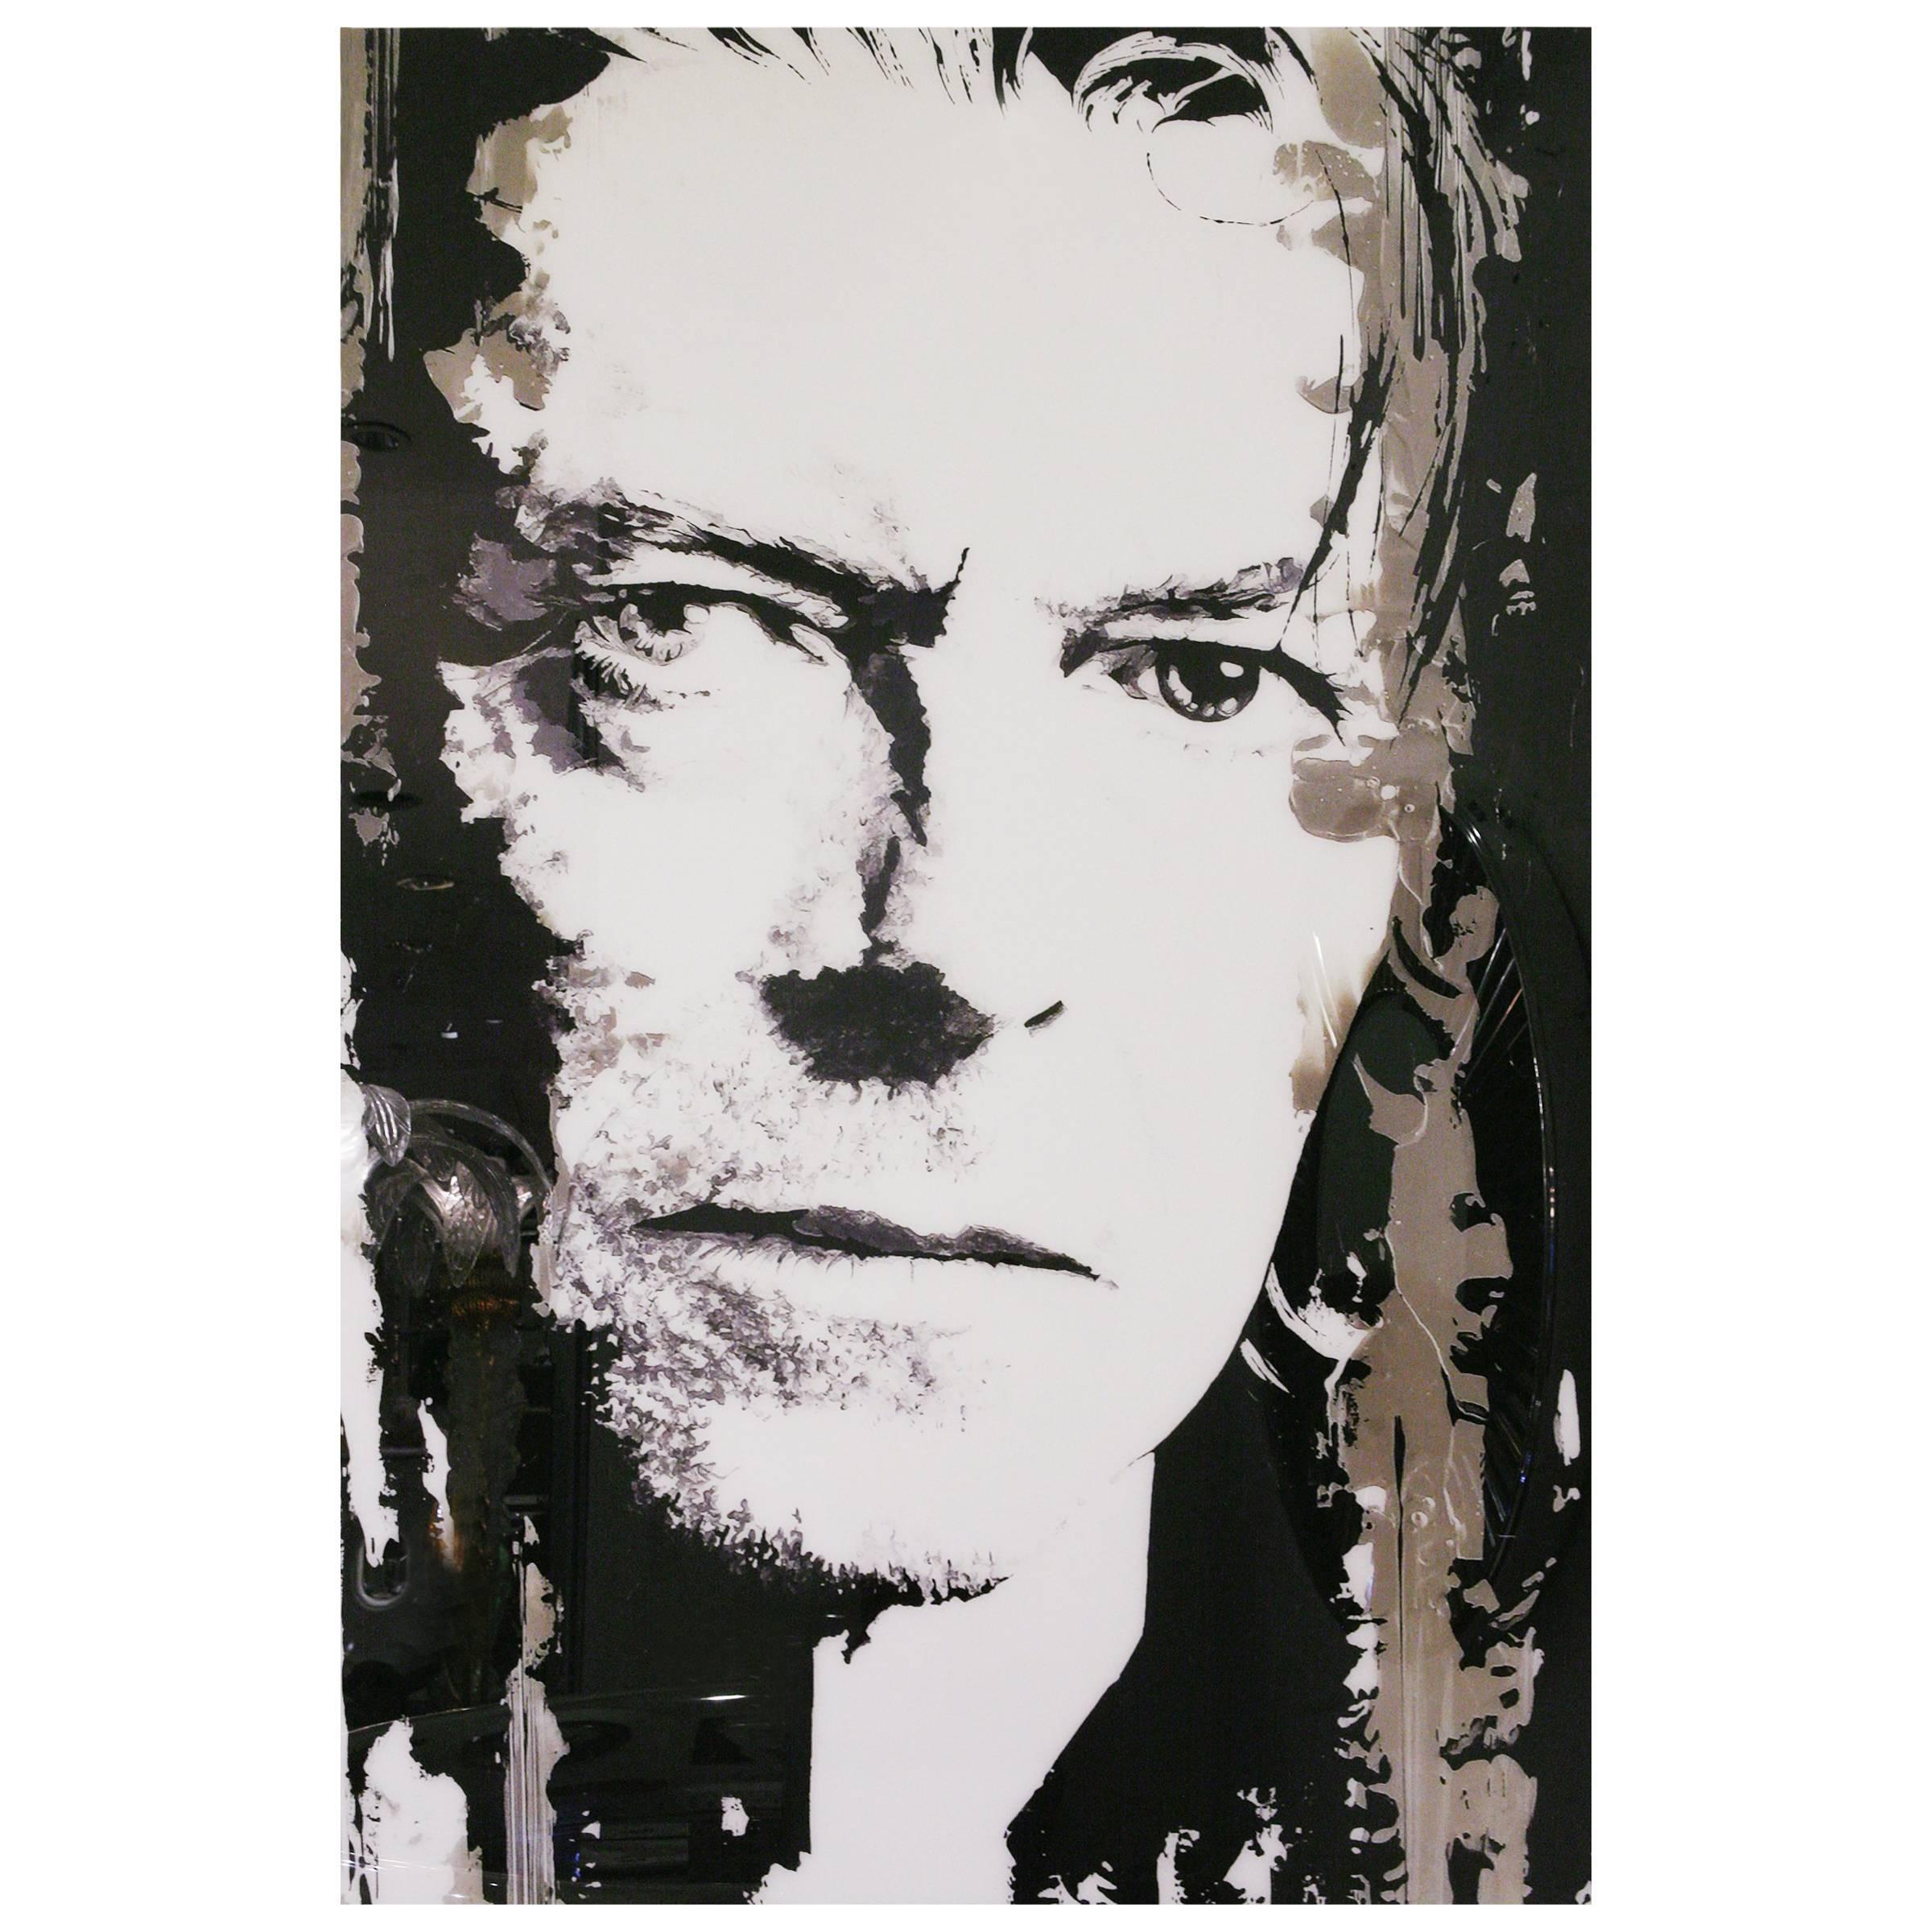 Photographie de David Bowie sur plexiglas